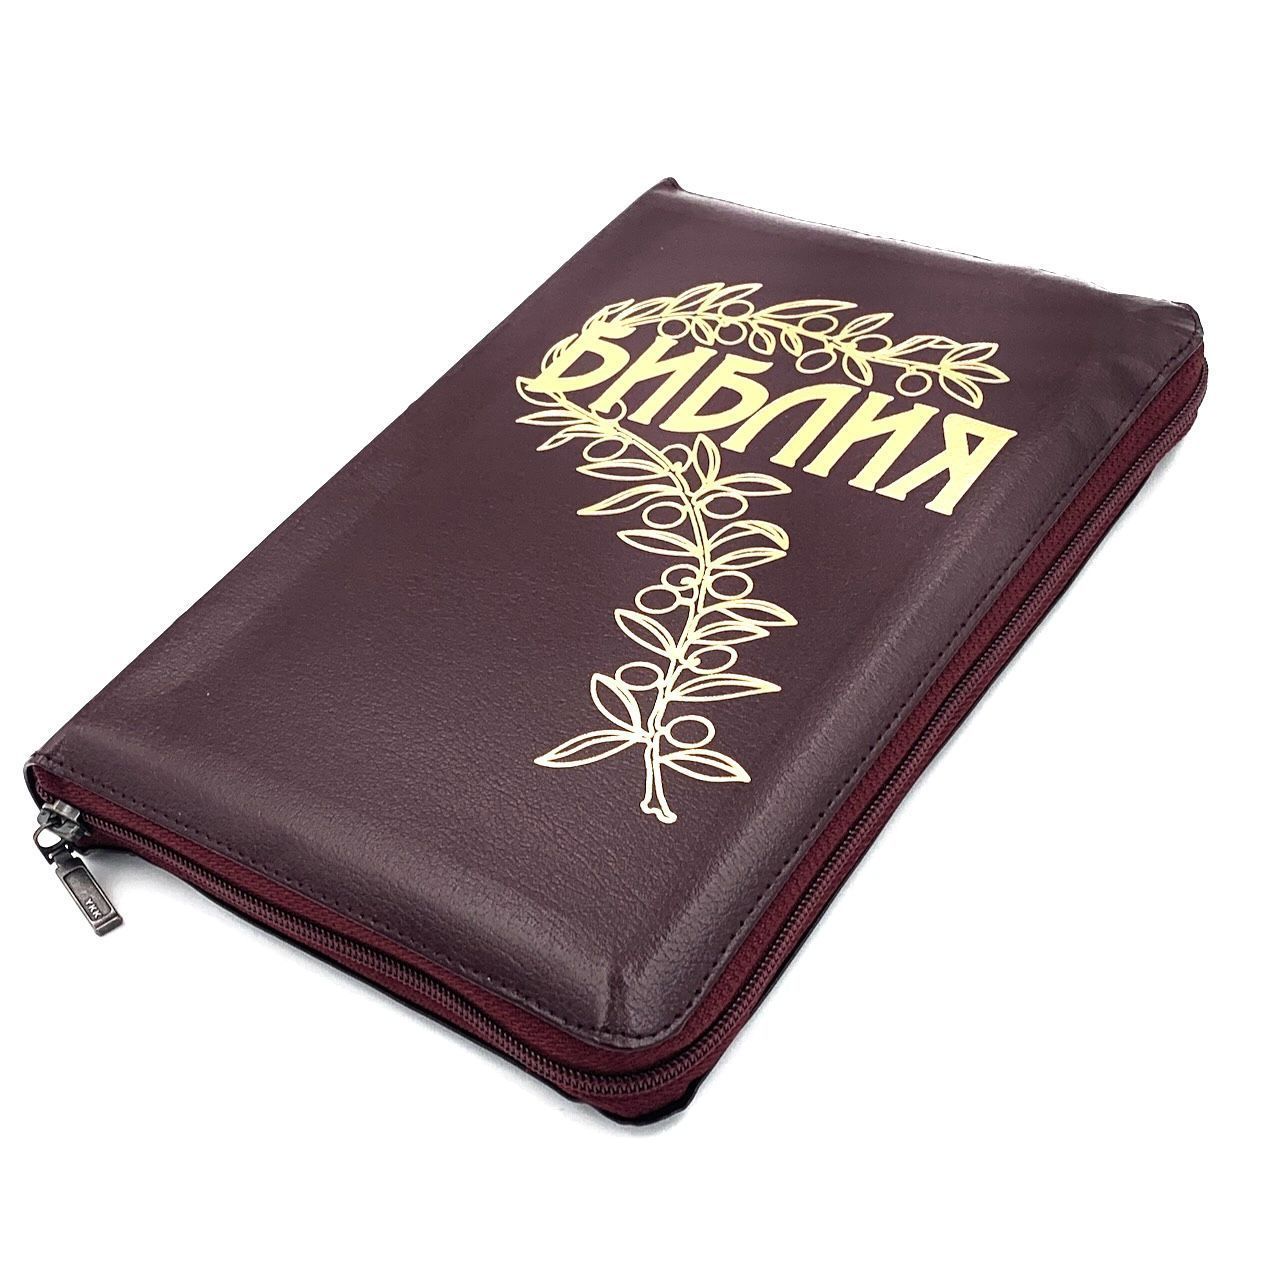 Библия Геце "с оливковой ветвью" 063z формат  (145*215 мм), прошитая, цвет бордо, кожаный переплет на молнии, золотые страницы, код 11671 (11673)